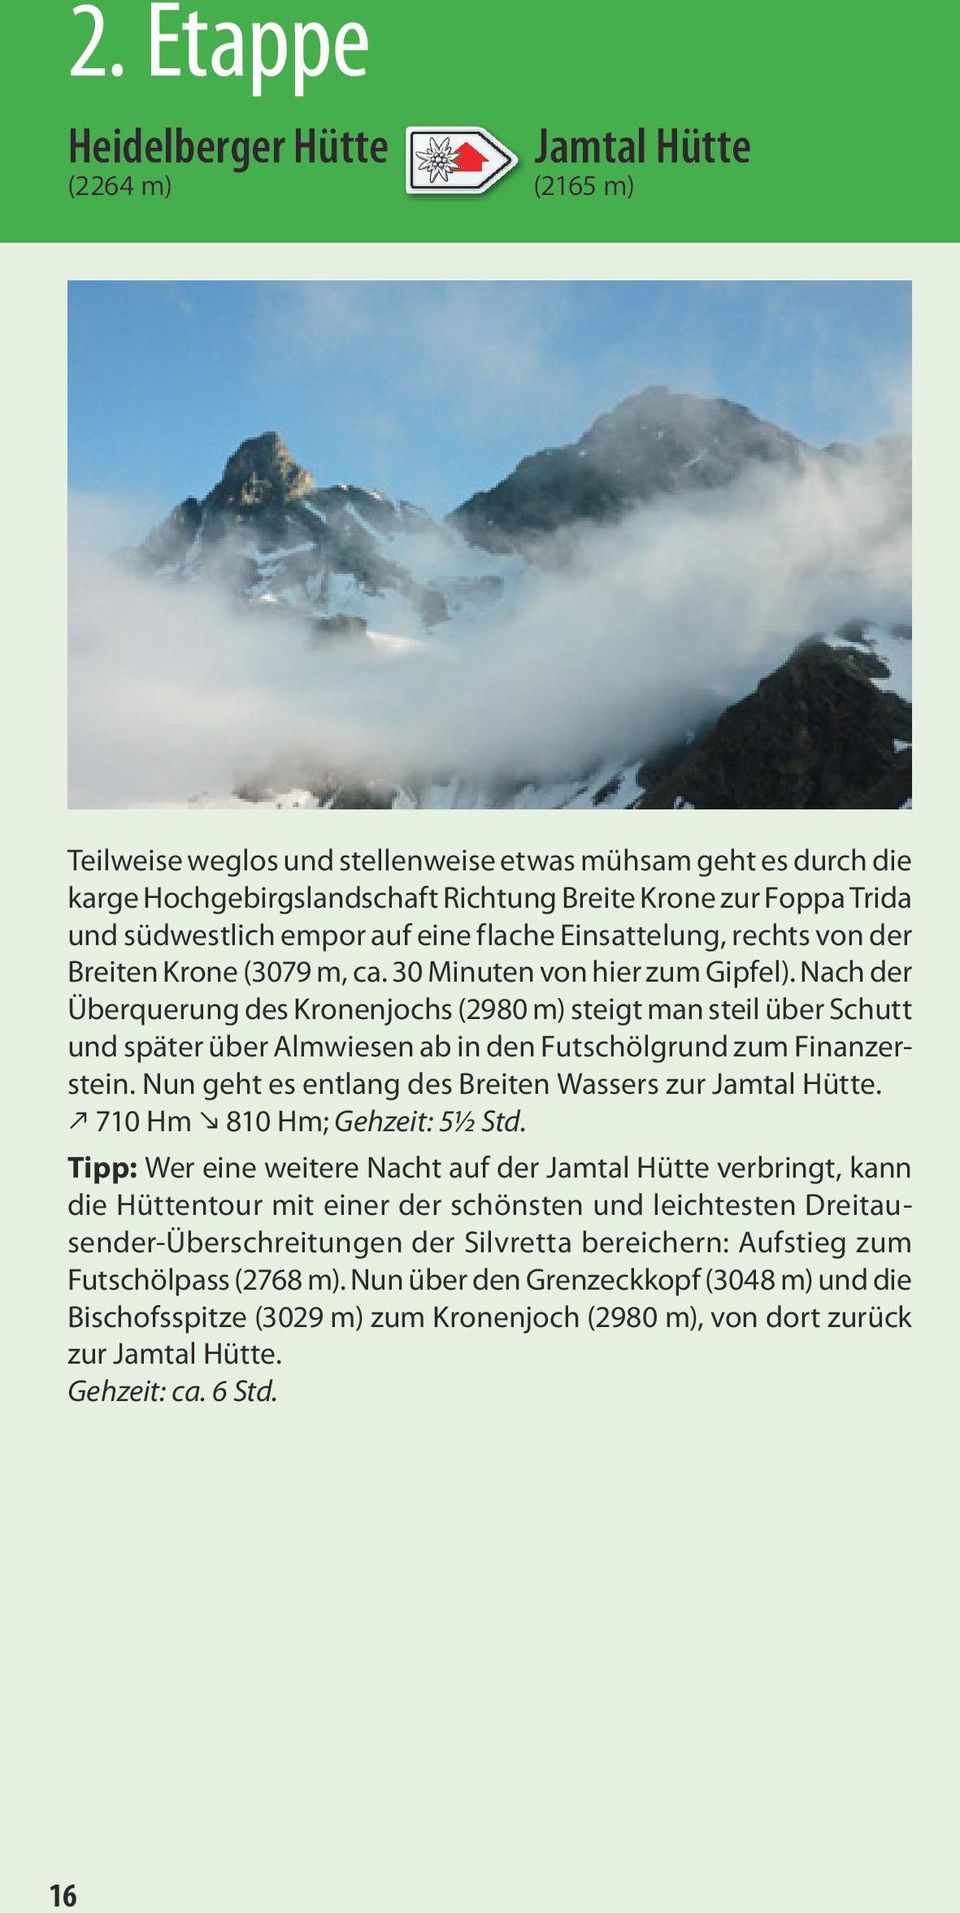 Nach der Überquerung des Kronenjochs (2980 m) steigt man steil über Schutt und später über Almwiesen ab in den Futschölgrund zum Finanzerstein.